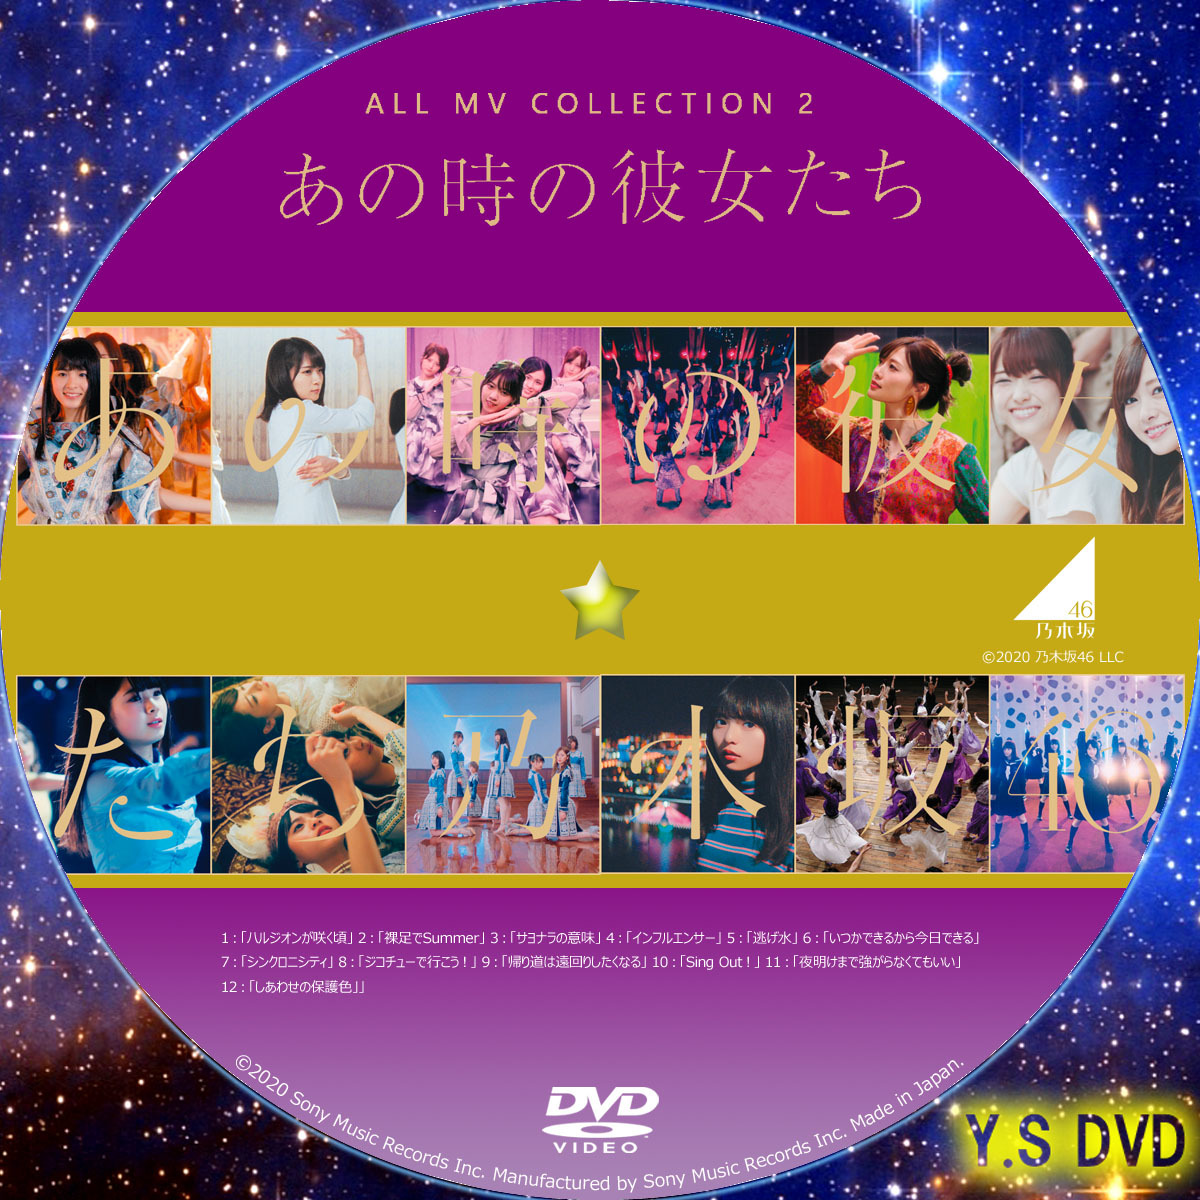 乃木坂46 ALL MV COLLECTION2 Blu-ray - ミュージック